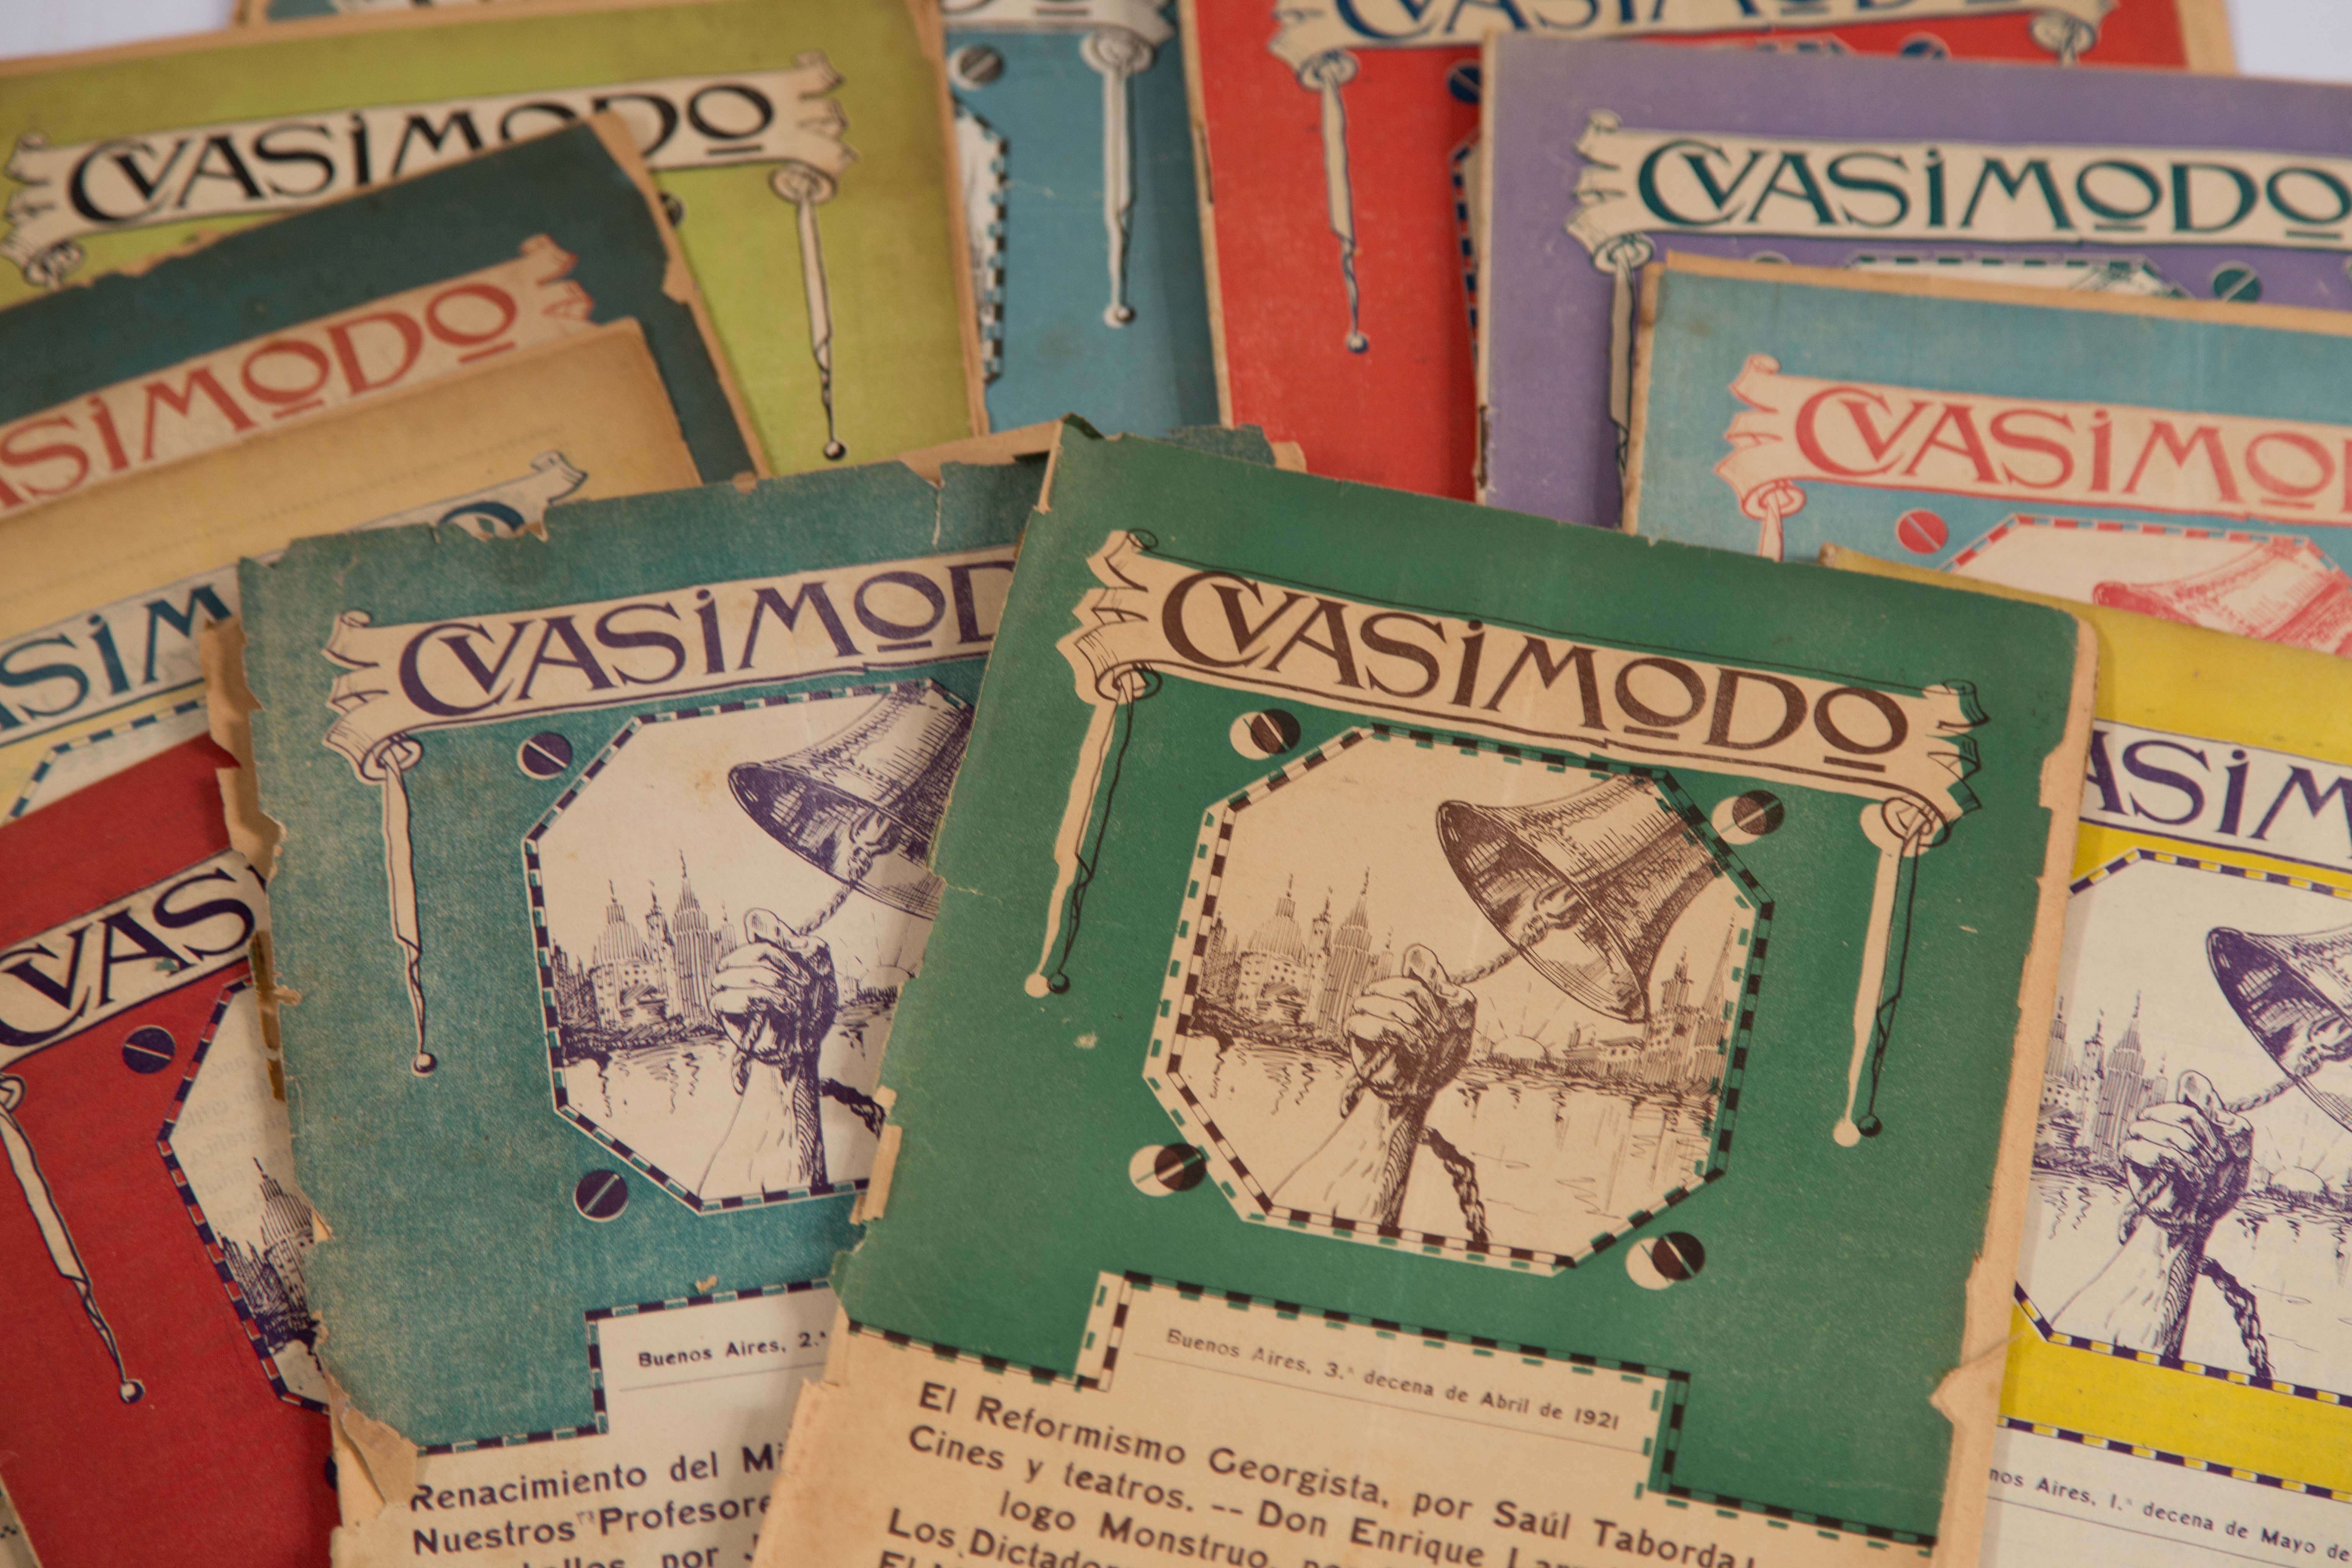 La revista Quasimodo, ya puede consultarse online en AméricaLee